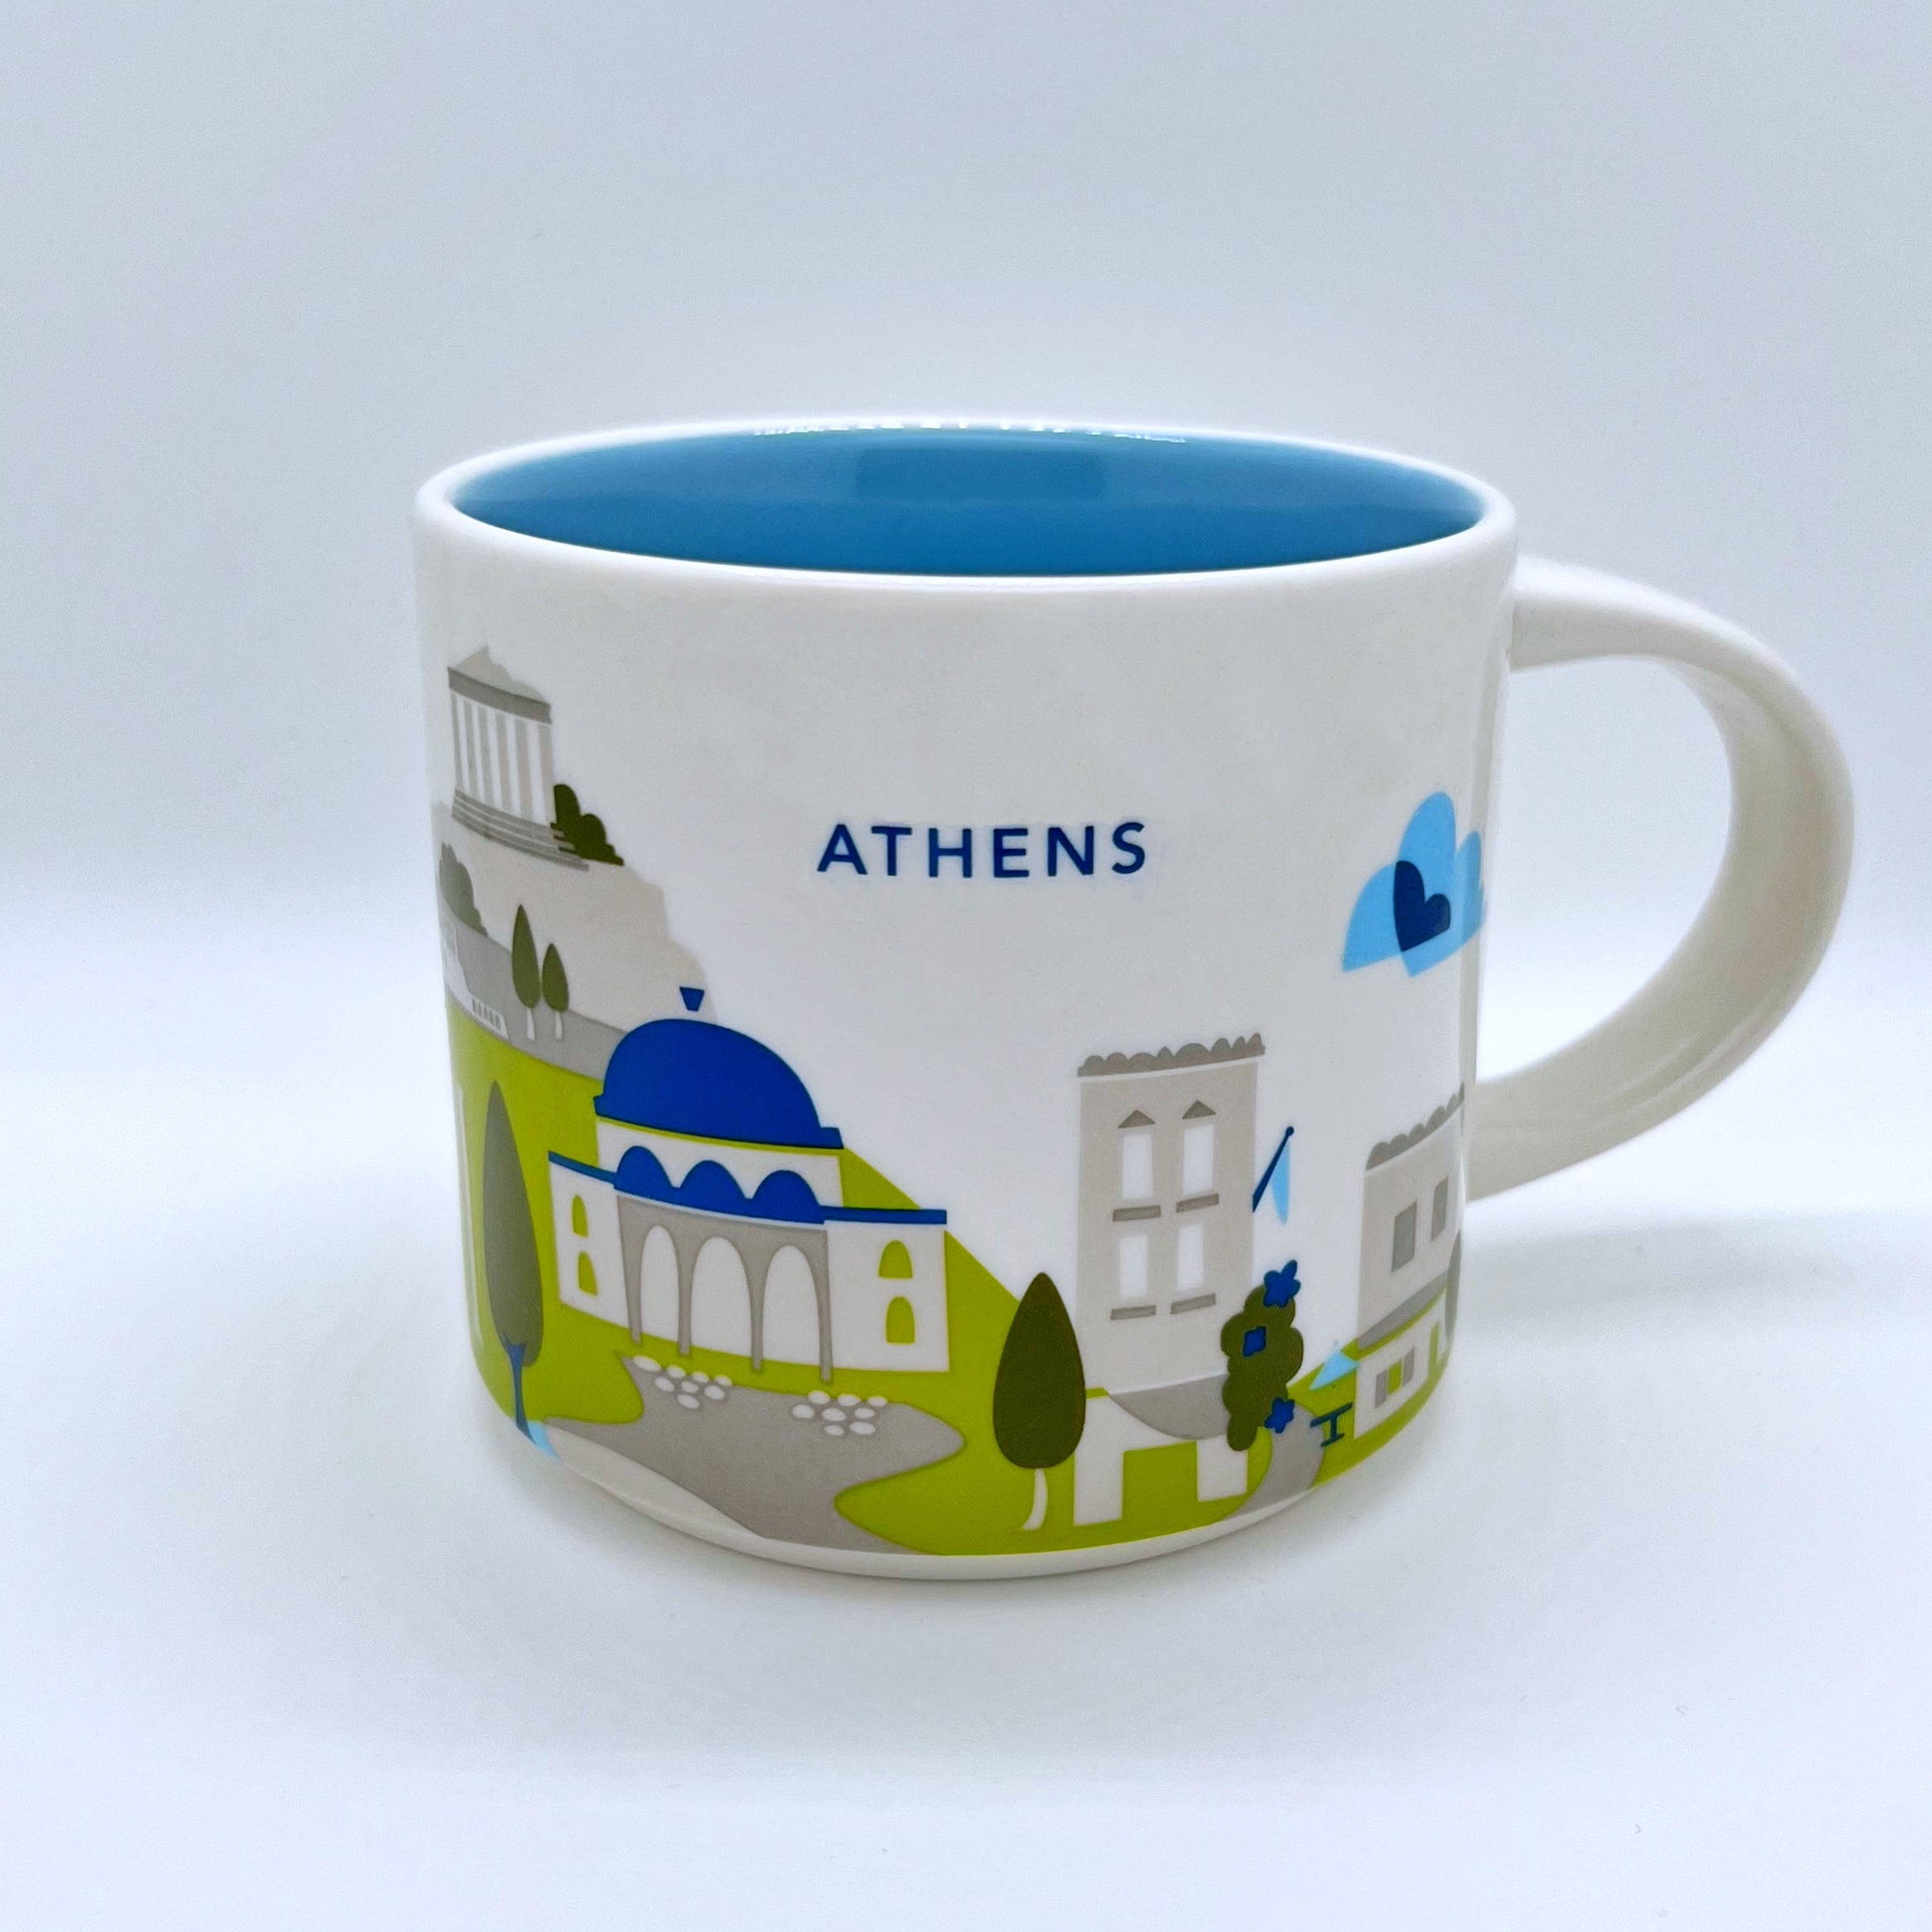 Kaffee Tee und Cappuccino Tasse von Starbucks mit gemalten Bildern aus der Stadt Athen